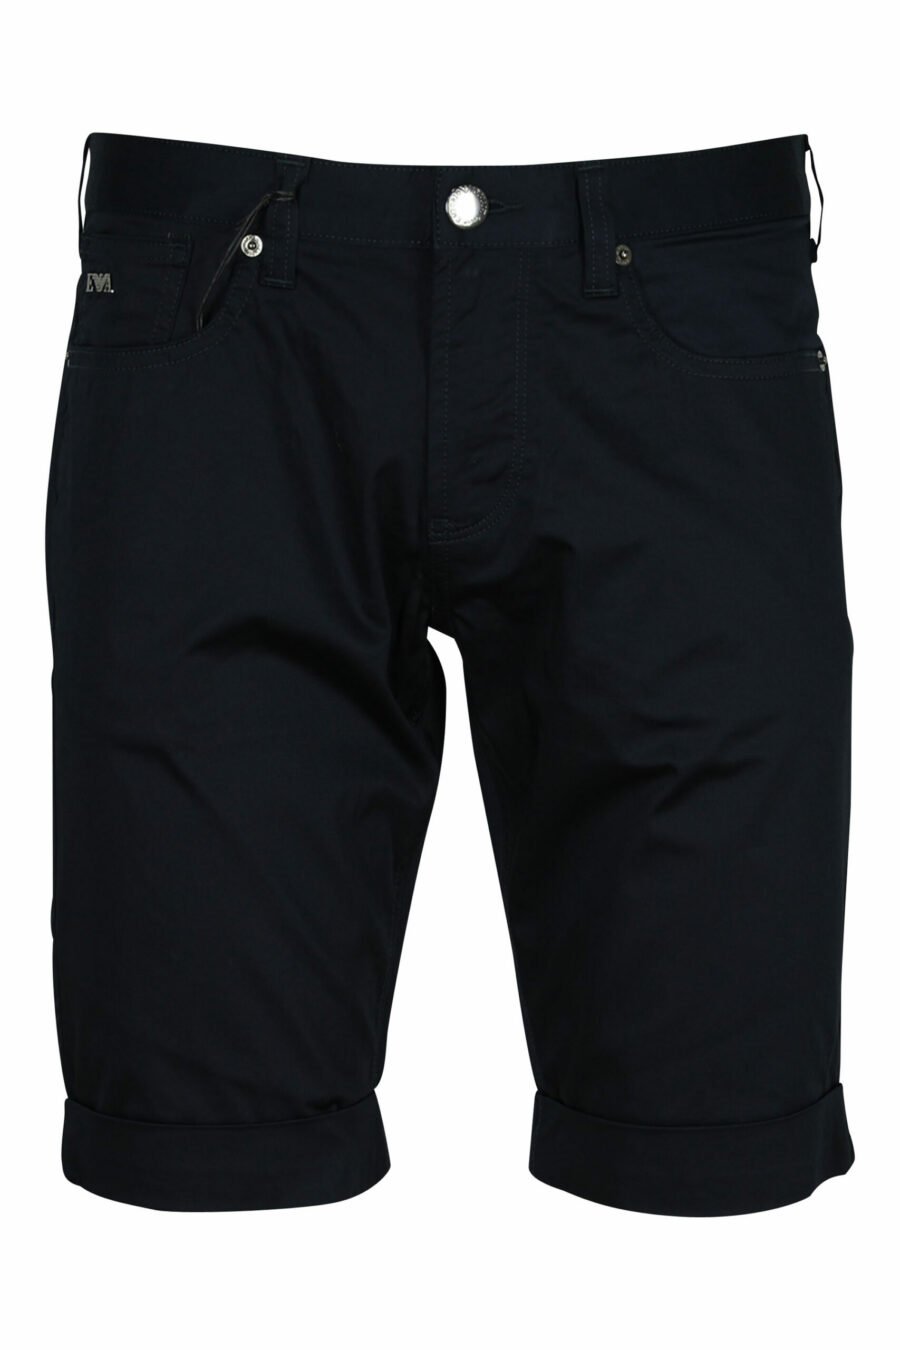 Dunkelblaue Shorts mit Mini-Adler-Logo - 8057163567200 skaliert